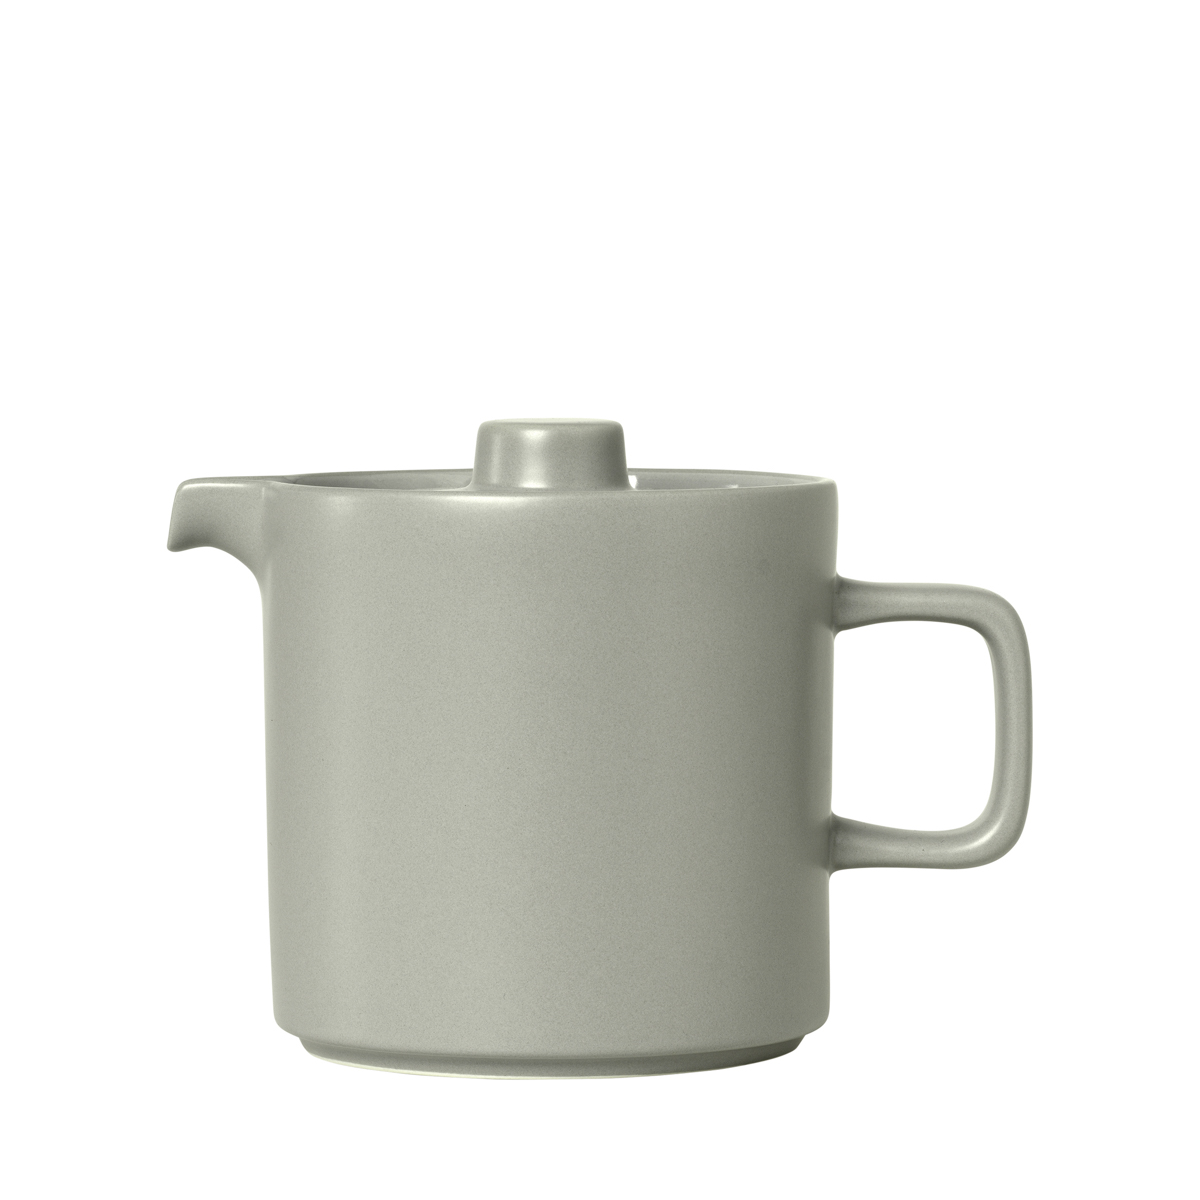 Teekanne -PILAR- Mirage Gray 1000 ml, Ø 12 cm. Material: Keramik. Von Blomus.